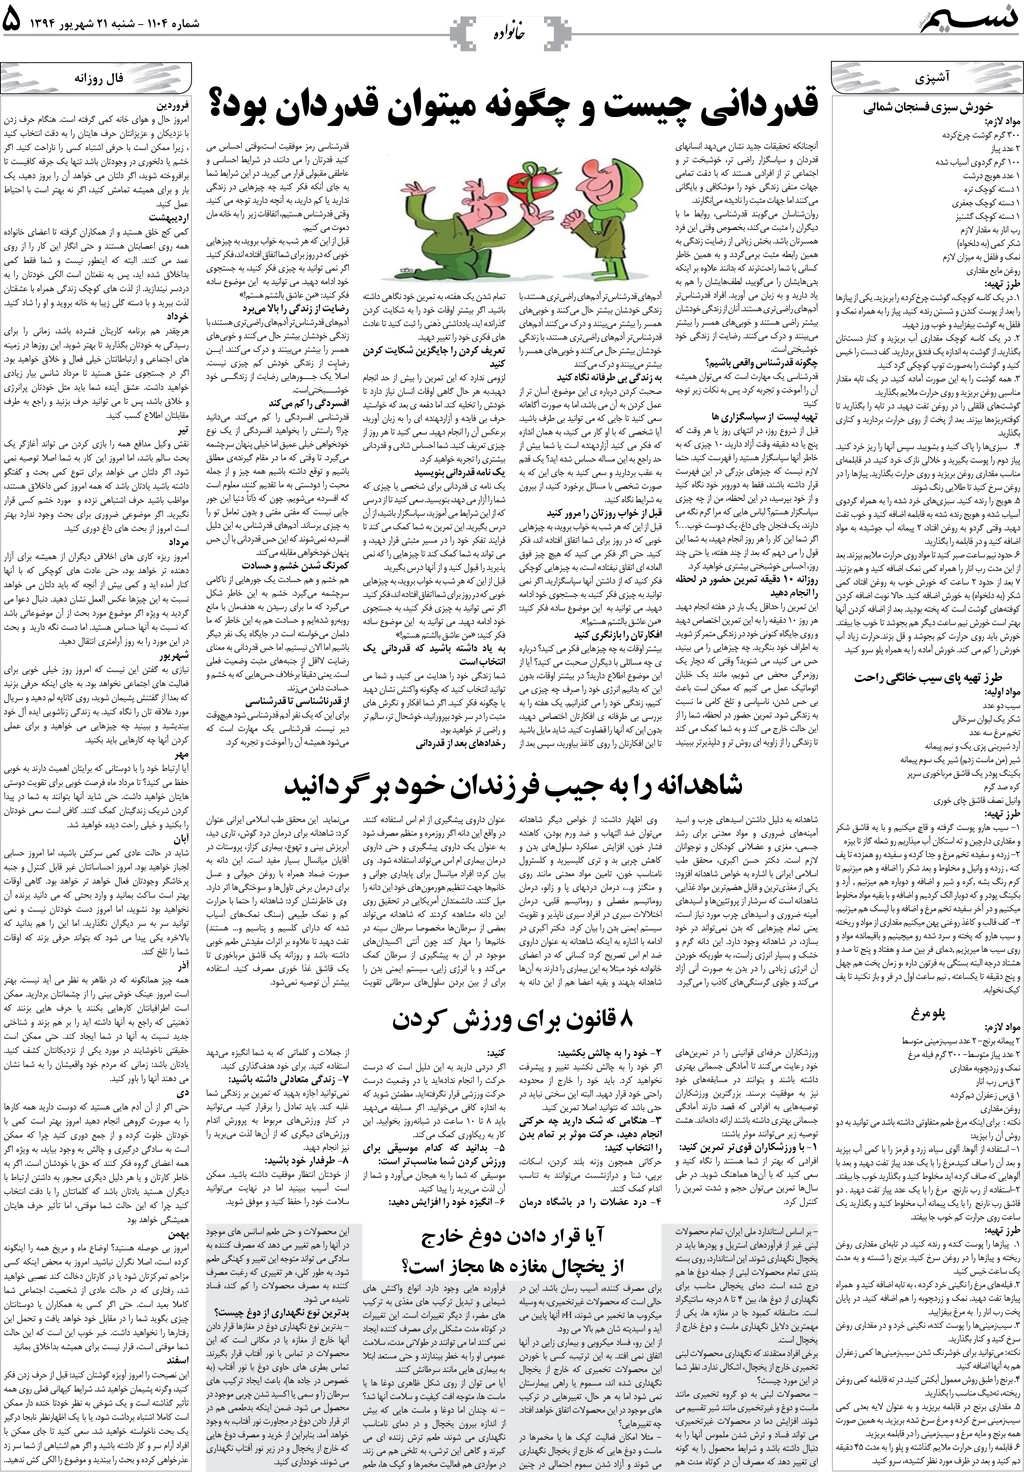 صفحه خانواده روزنامه نسیم شماره 1104